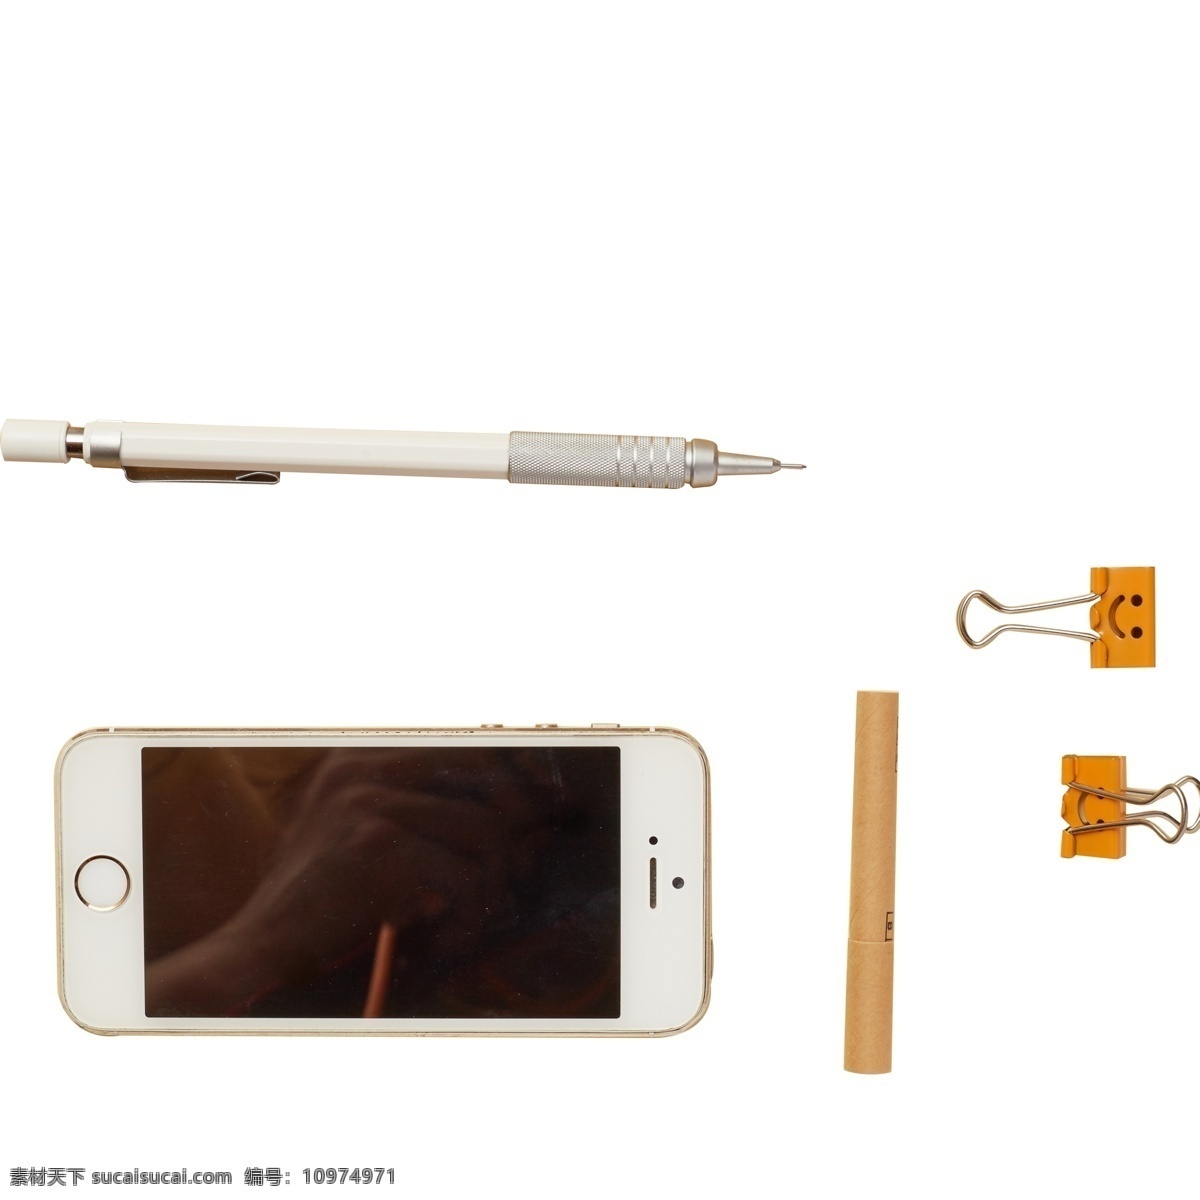 手机 钢笔 夹子 免 抠 图 竹签 电子手机 通讯手机 圆珠笔 灰色的笔 灰色的钢笔 办公用品 免抠图